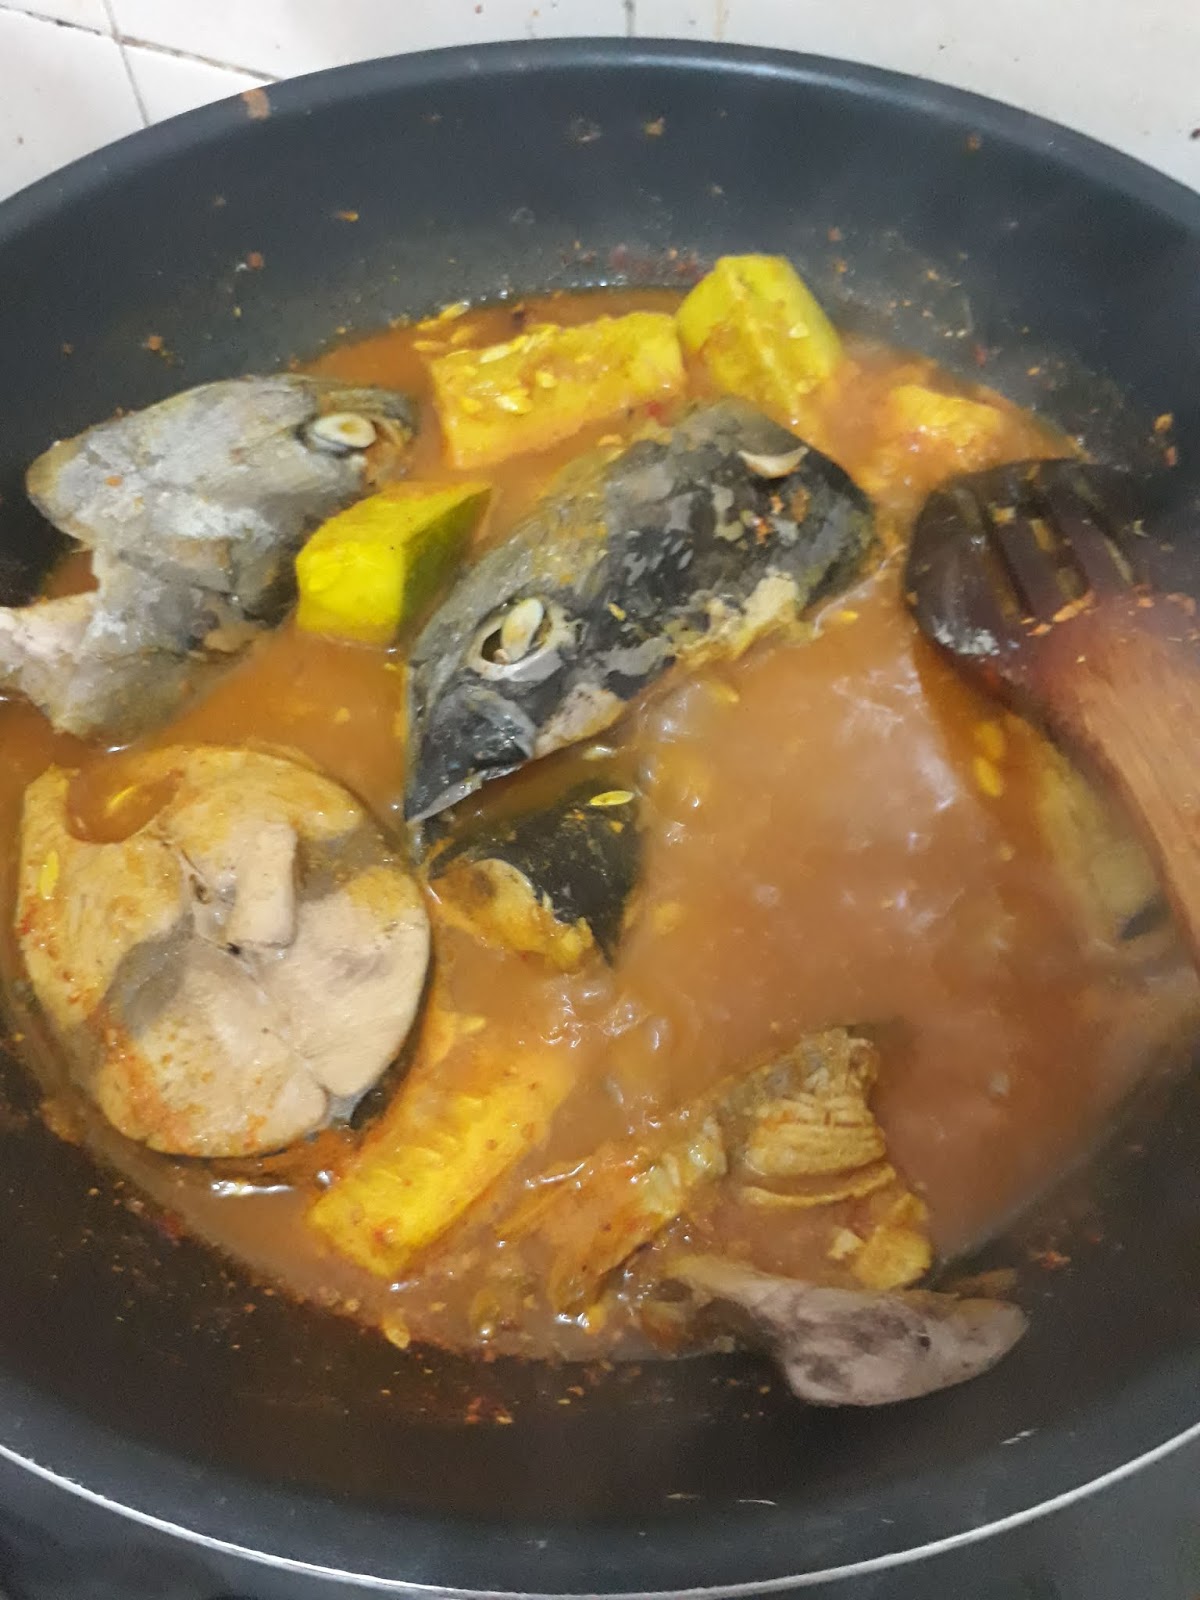 Norhidana: Resepi gulai kuning ikan aye @tongkol